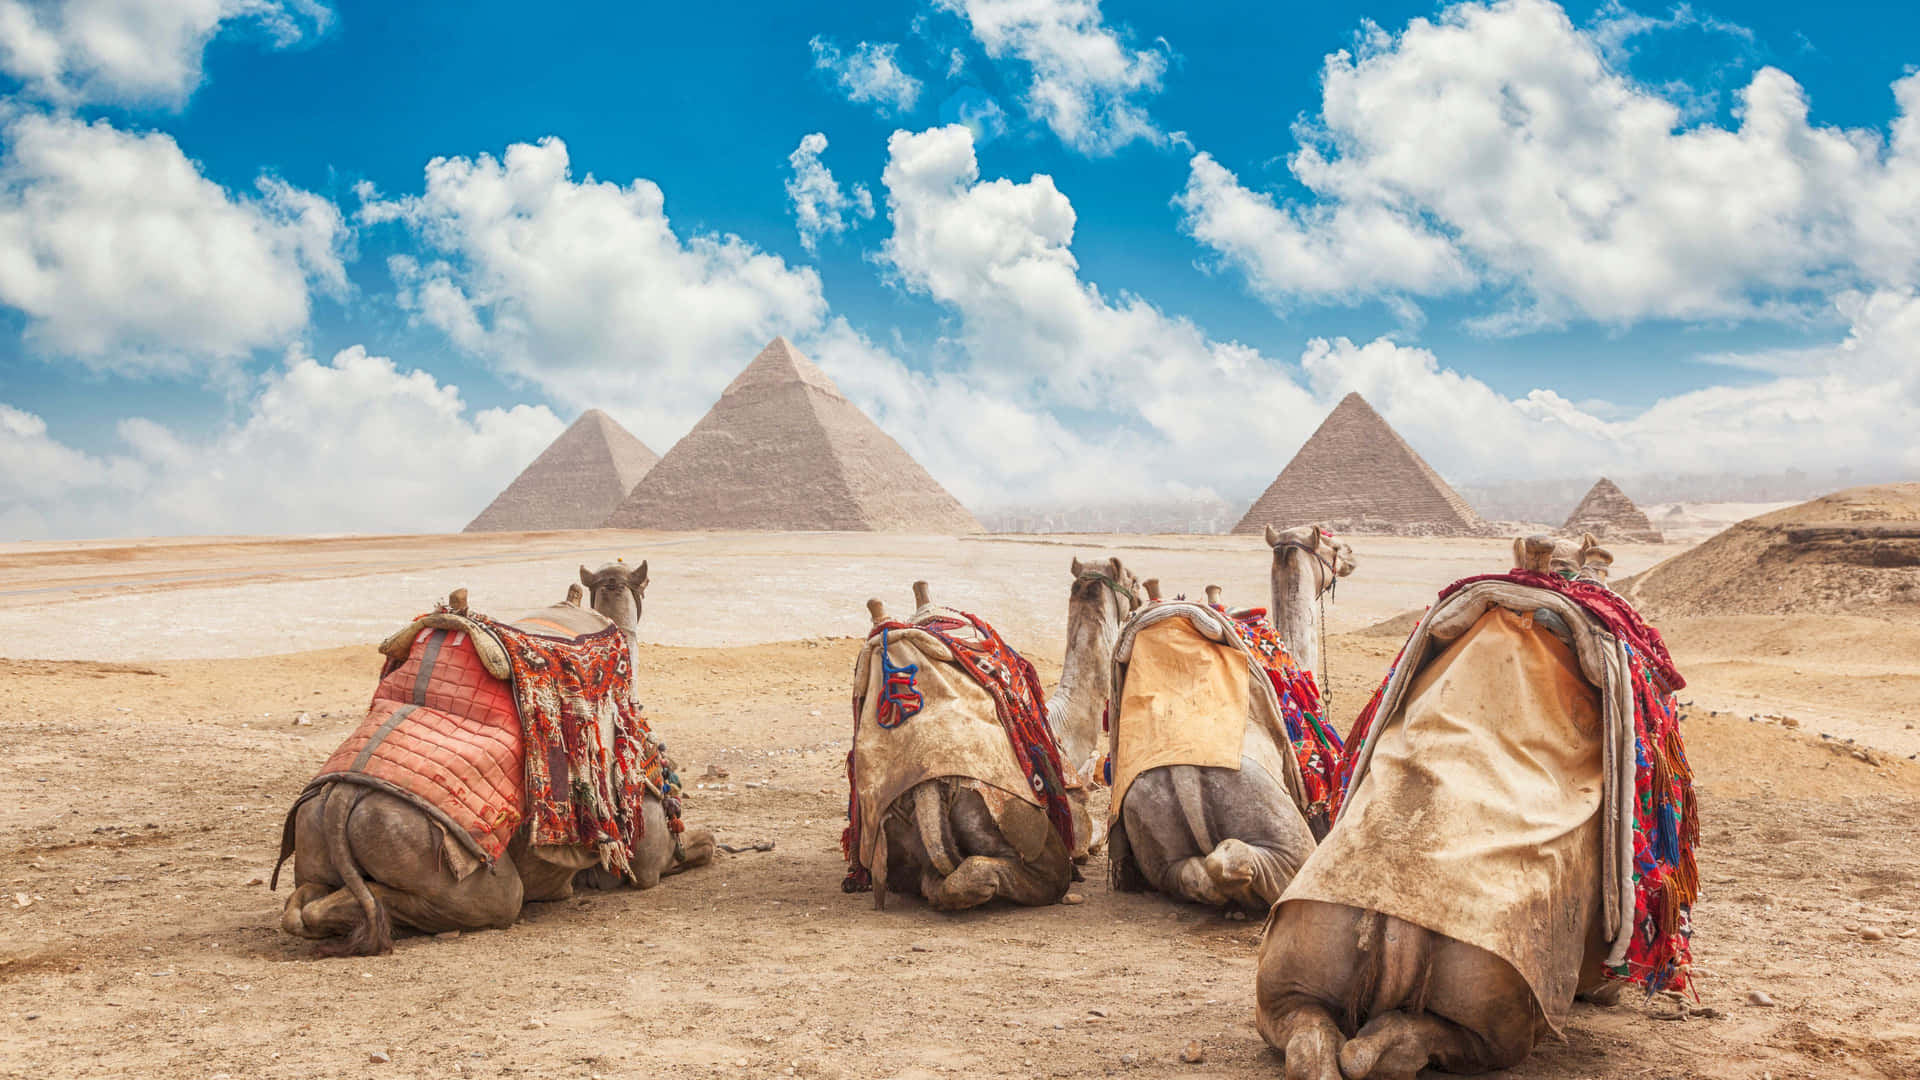 Majestic Giza Pyramids and Sphinx under Vibrant Sky